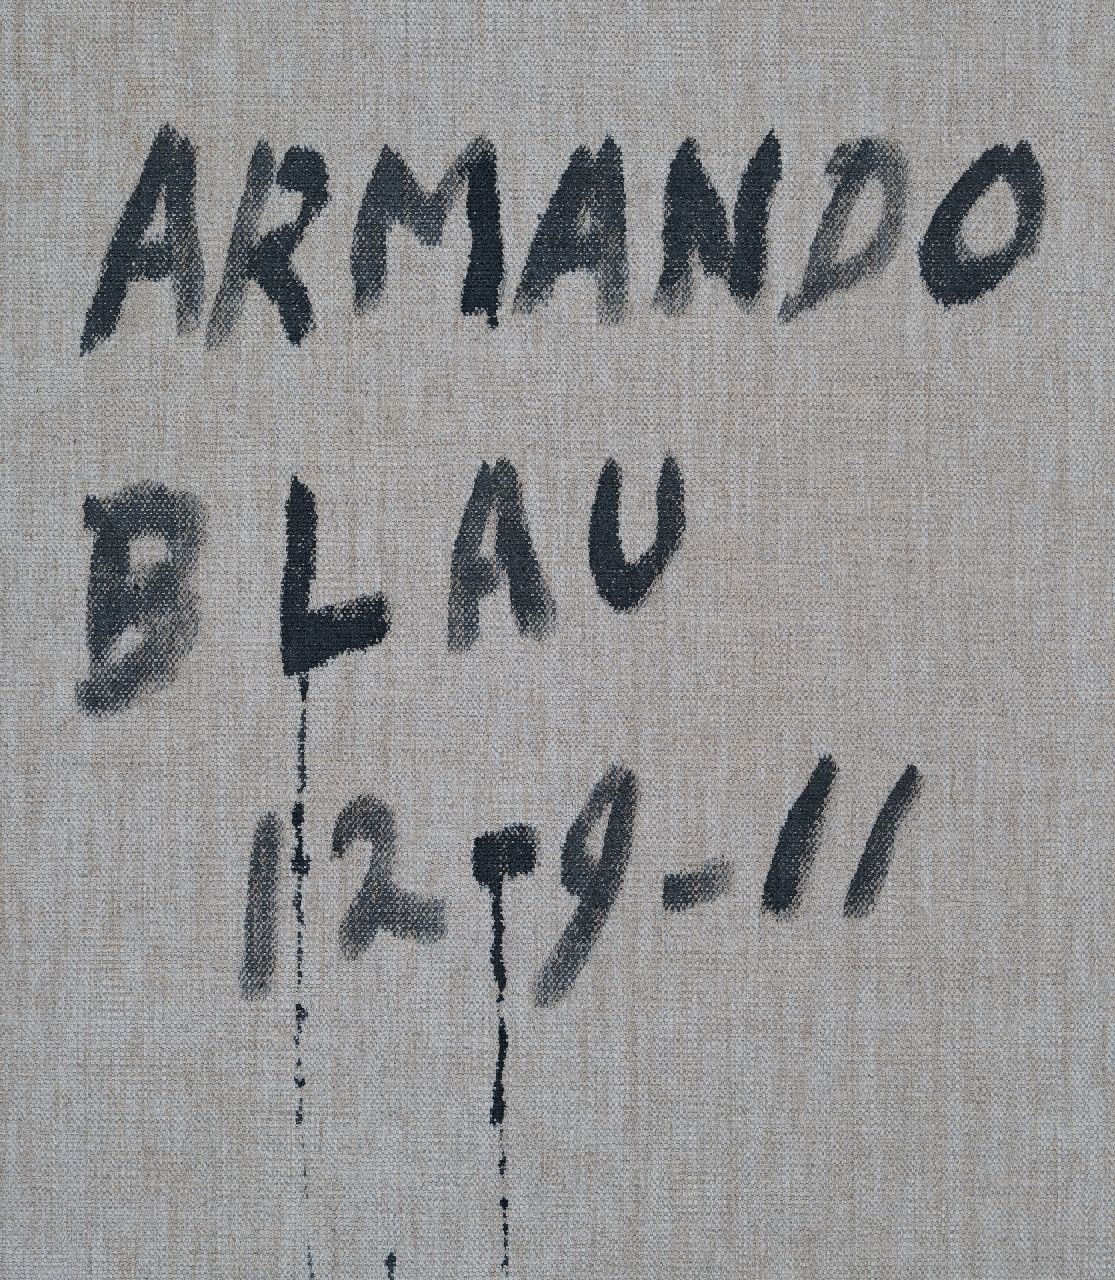 Armando signatures Blau (Blue)